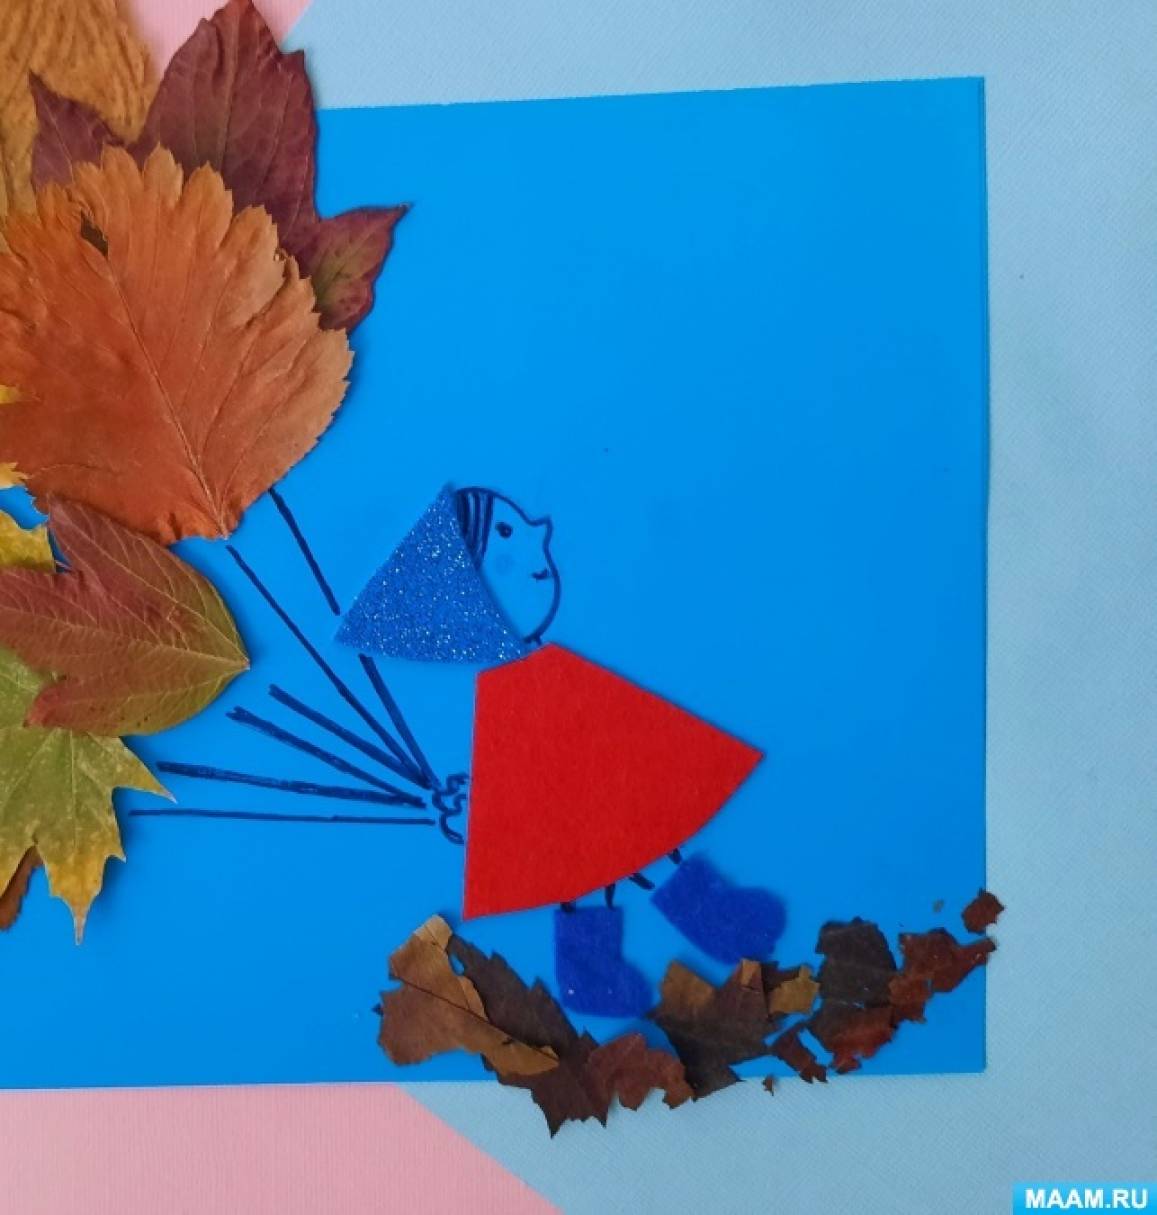 Осенние поделки для детей: интересные идеи из листьев, бумаги, шишек и веточек